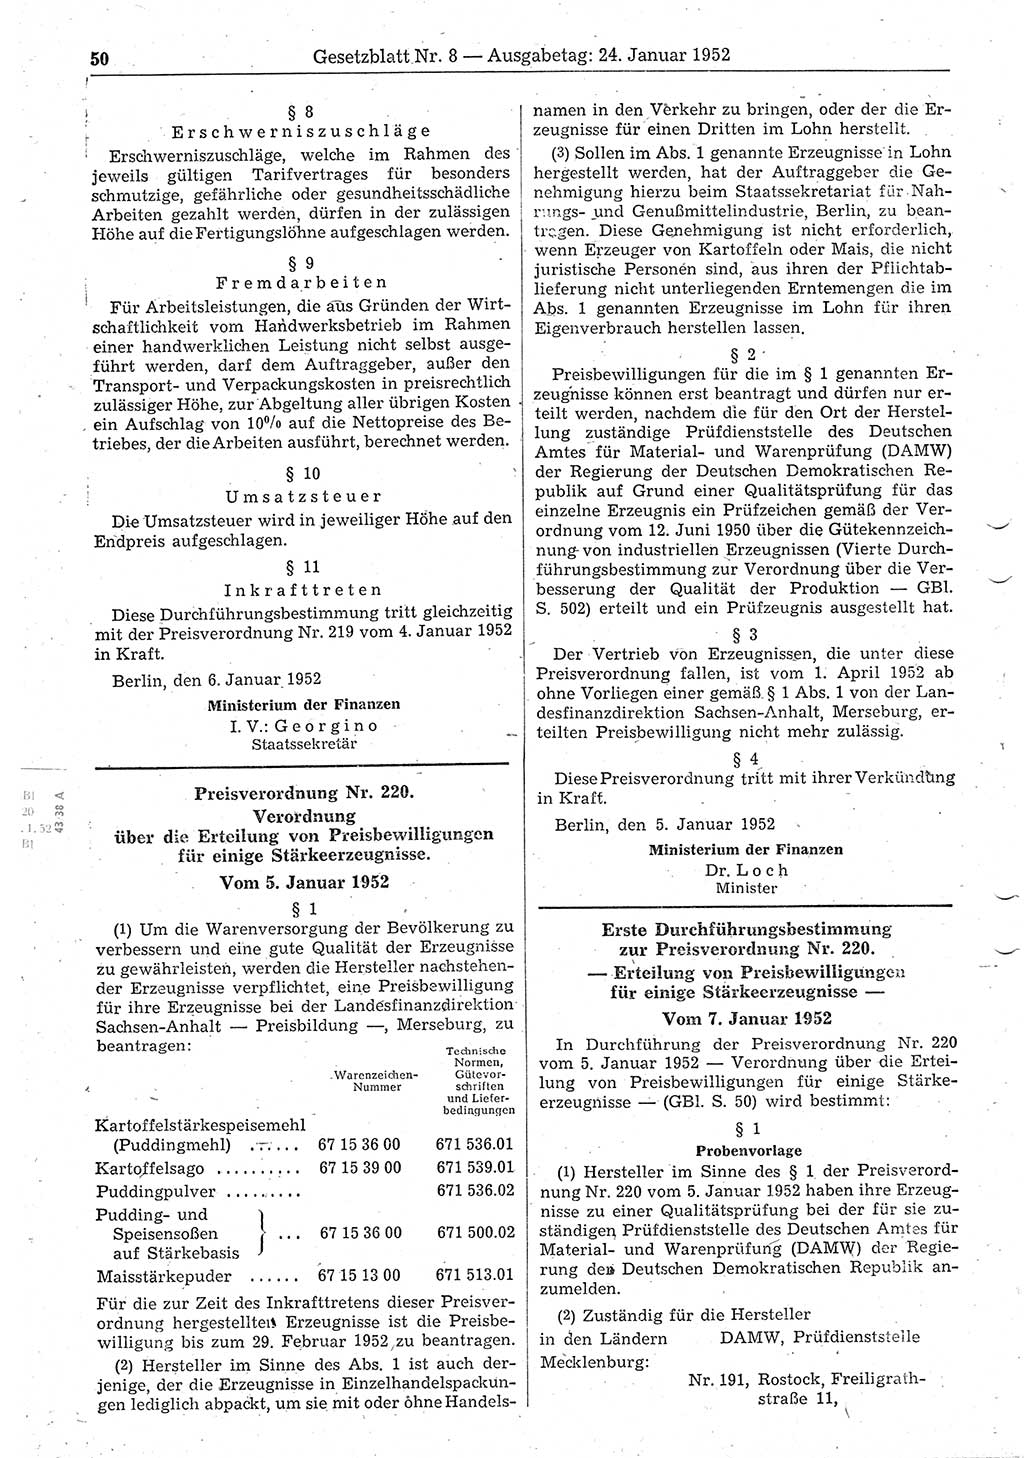 Gesetzblatt (GBl.) der Deutschen Demokratischen Republik (DDR) 1952, Seite 50 (GBl. DDR 1952, S. 50)